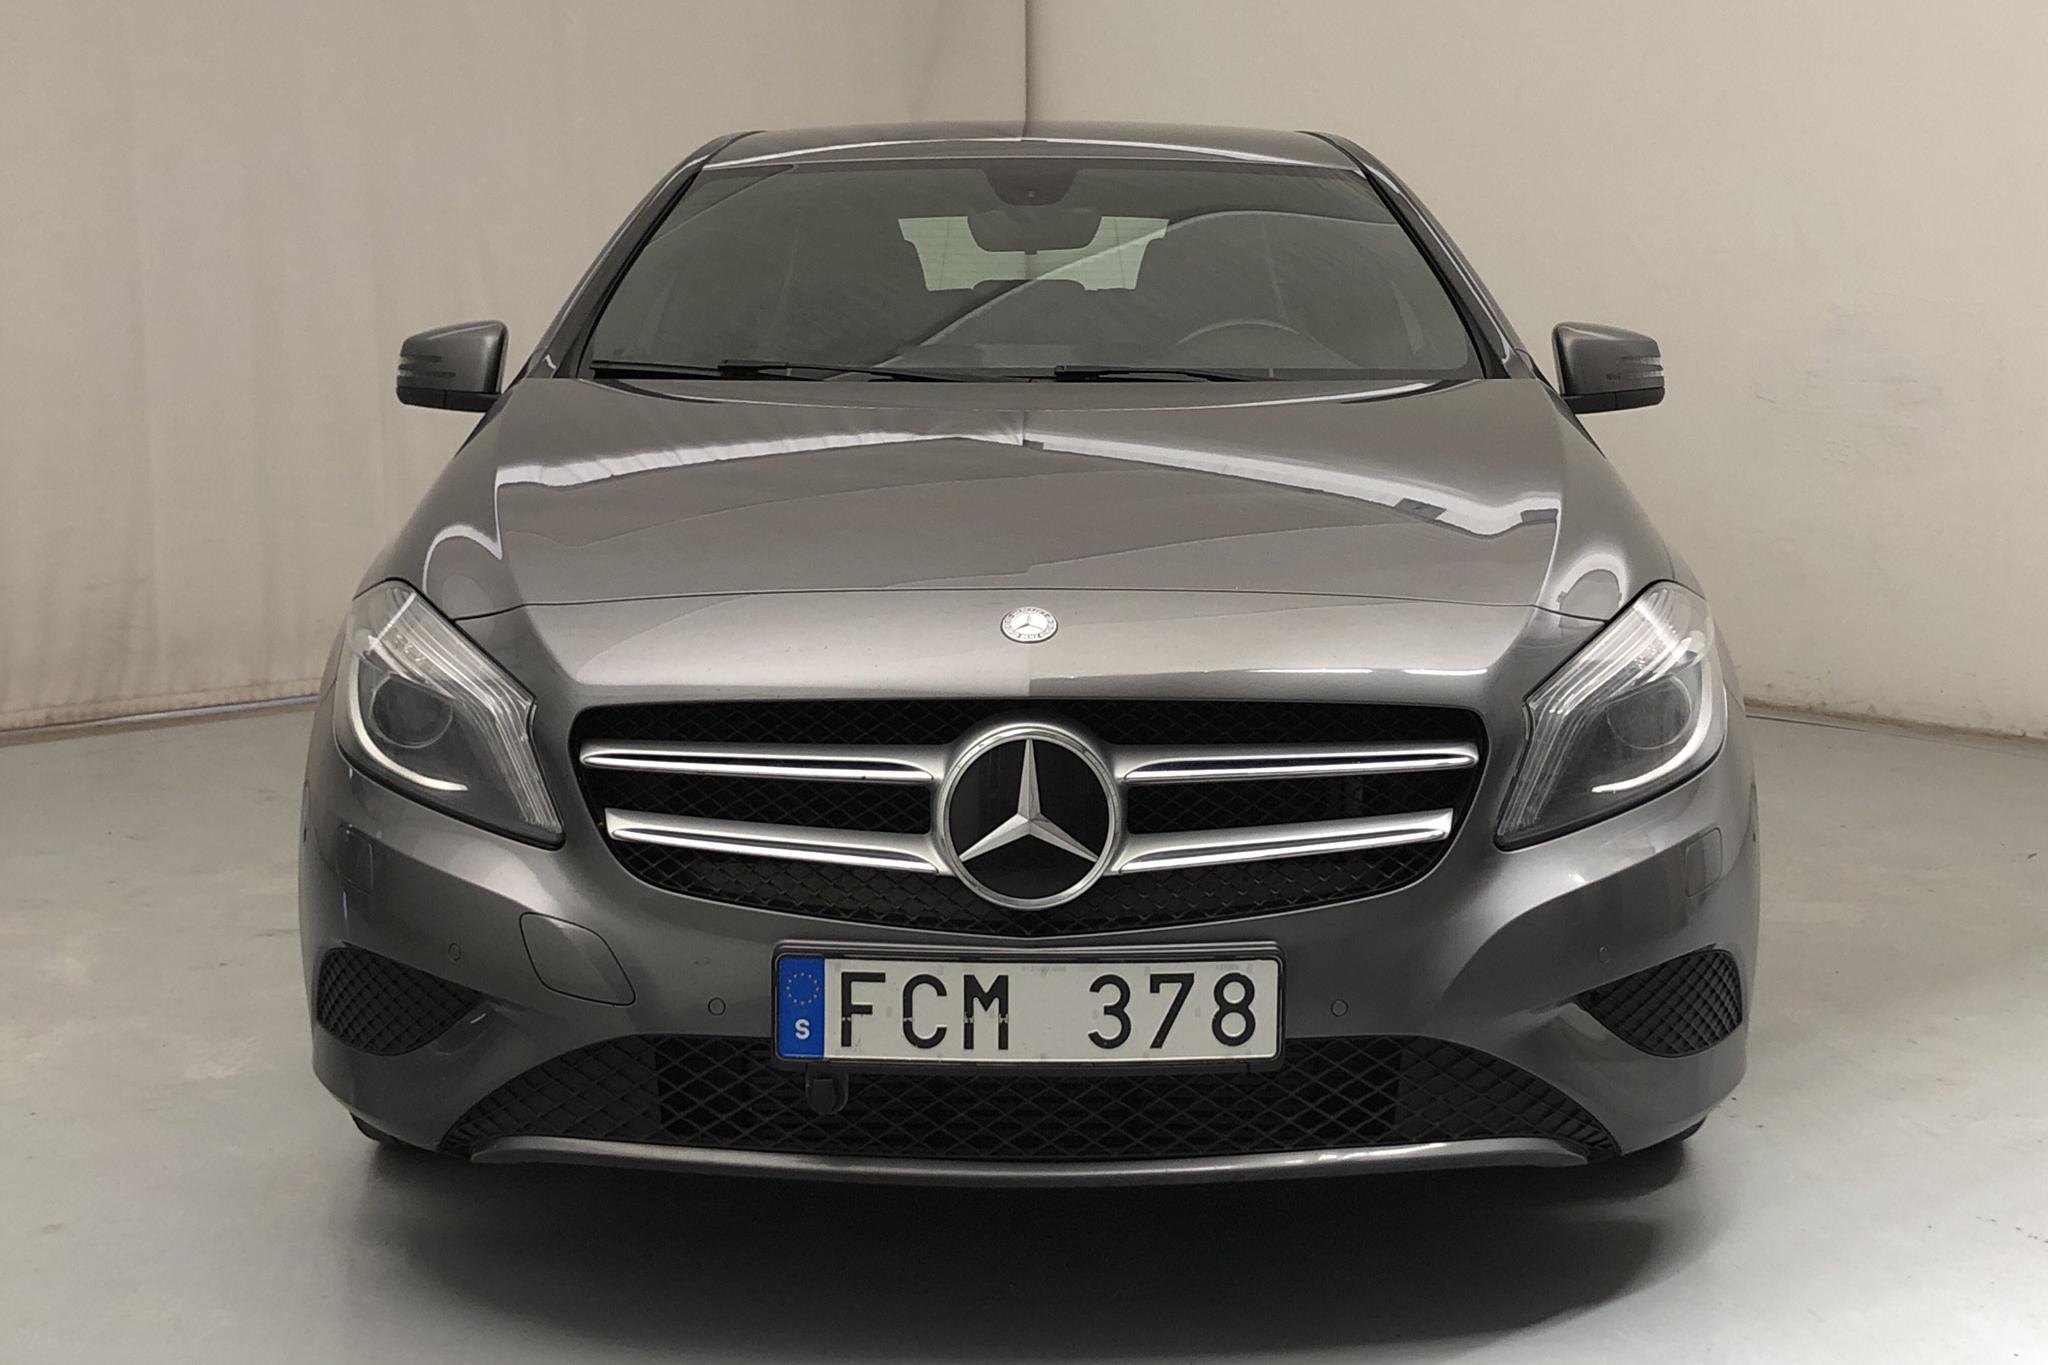 Mercedes A 180 CDI 5dr W176 (109hk) - 123 680 km - Manual - Dark Grey - 2014